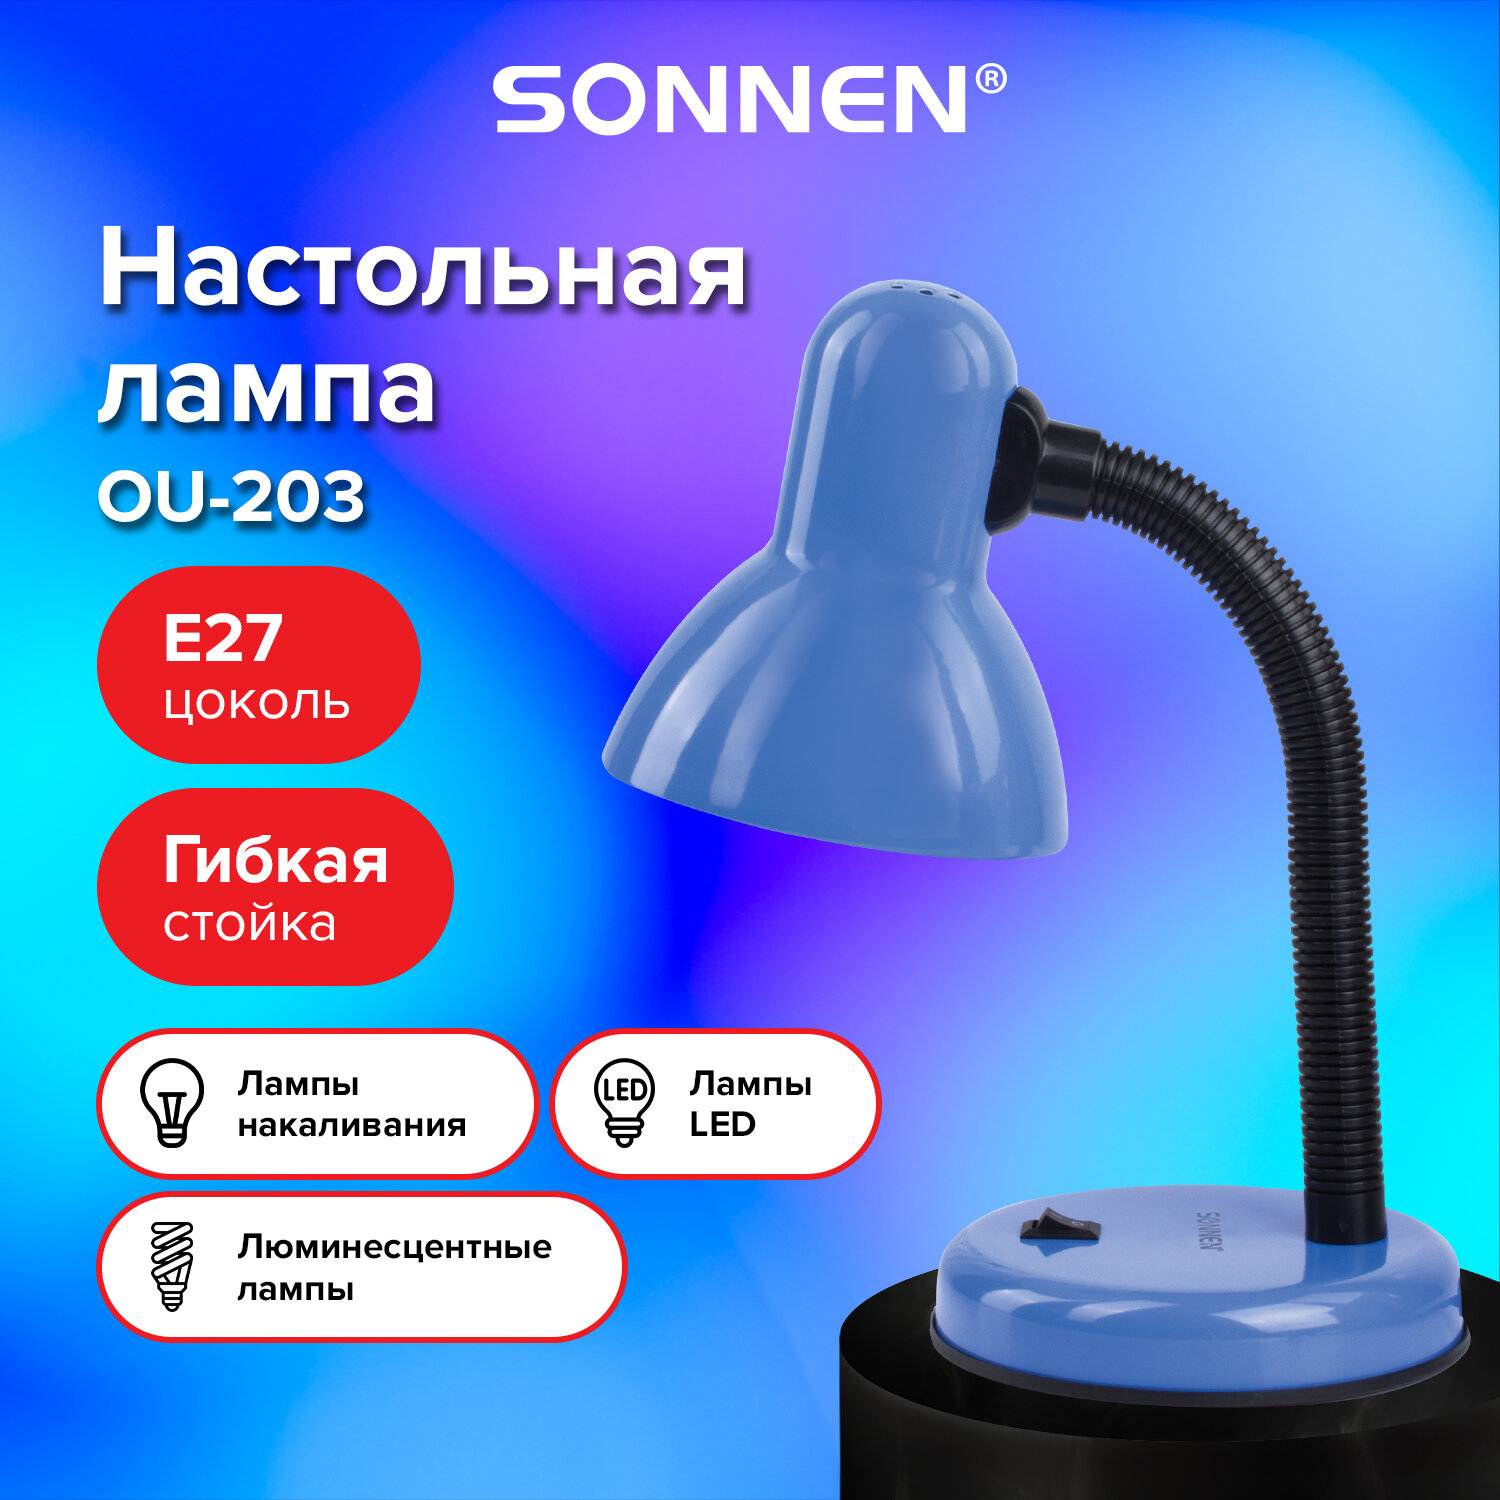 Sonnen Светильник настольный SONNEN OU-203, на подставке, цоколь Е27, синий, 236677